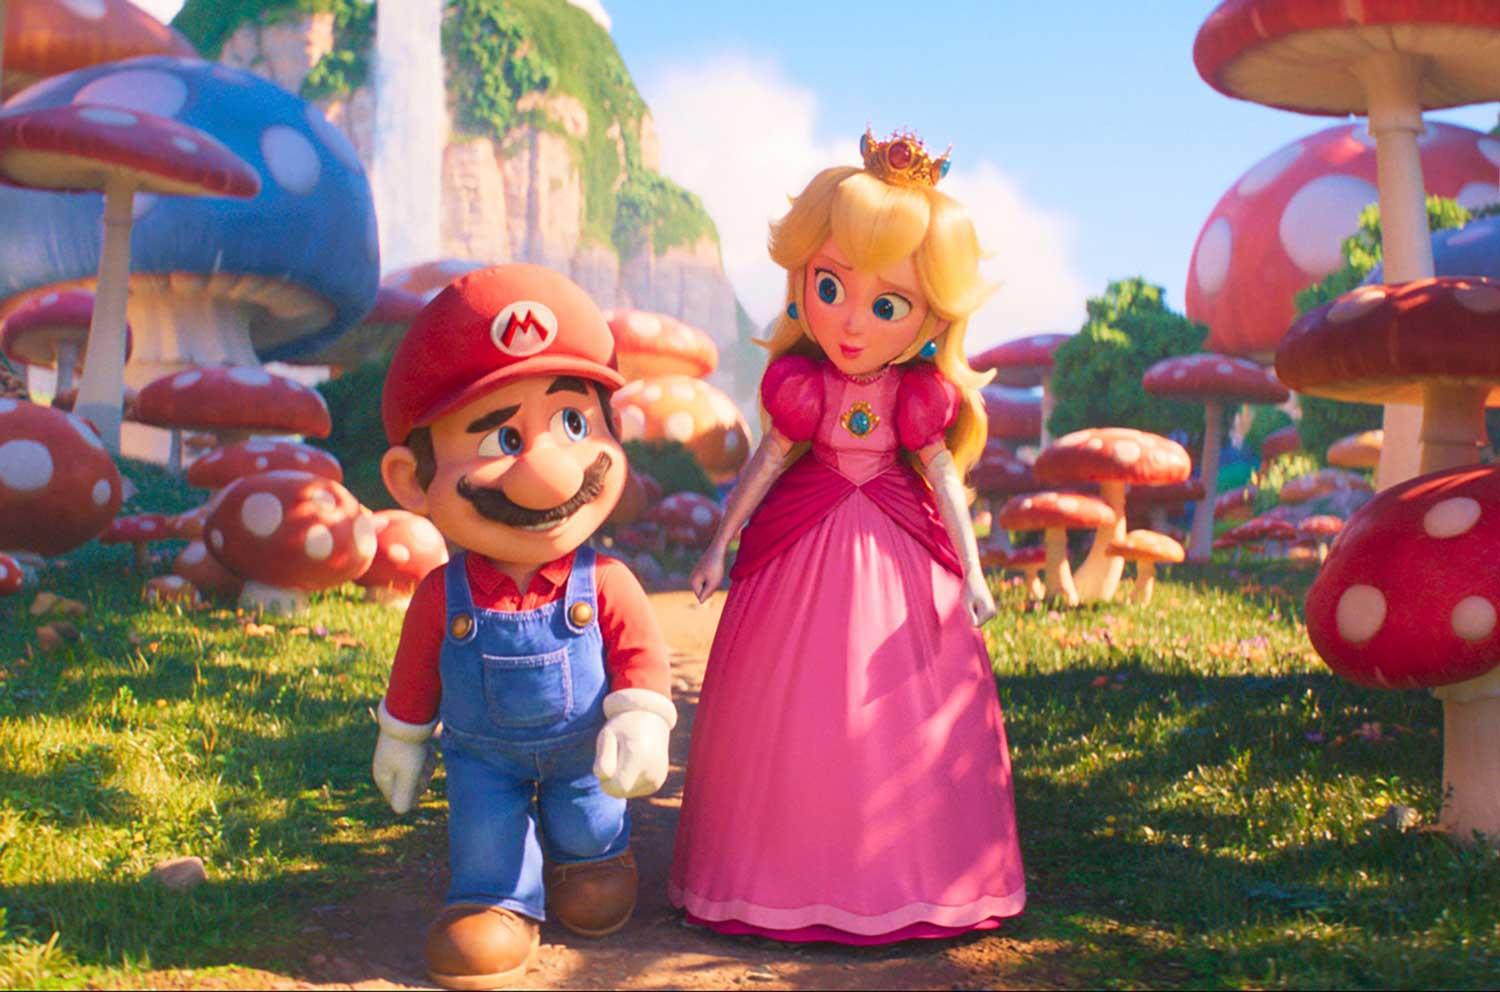 پیاده روی پرنسس پیچ با لباس صورتی کنار ماریو با کلاه قرمز در انیمیشن برادران سوپر ماریو